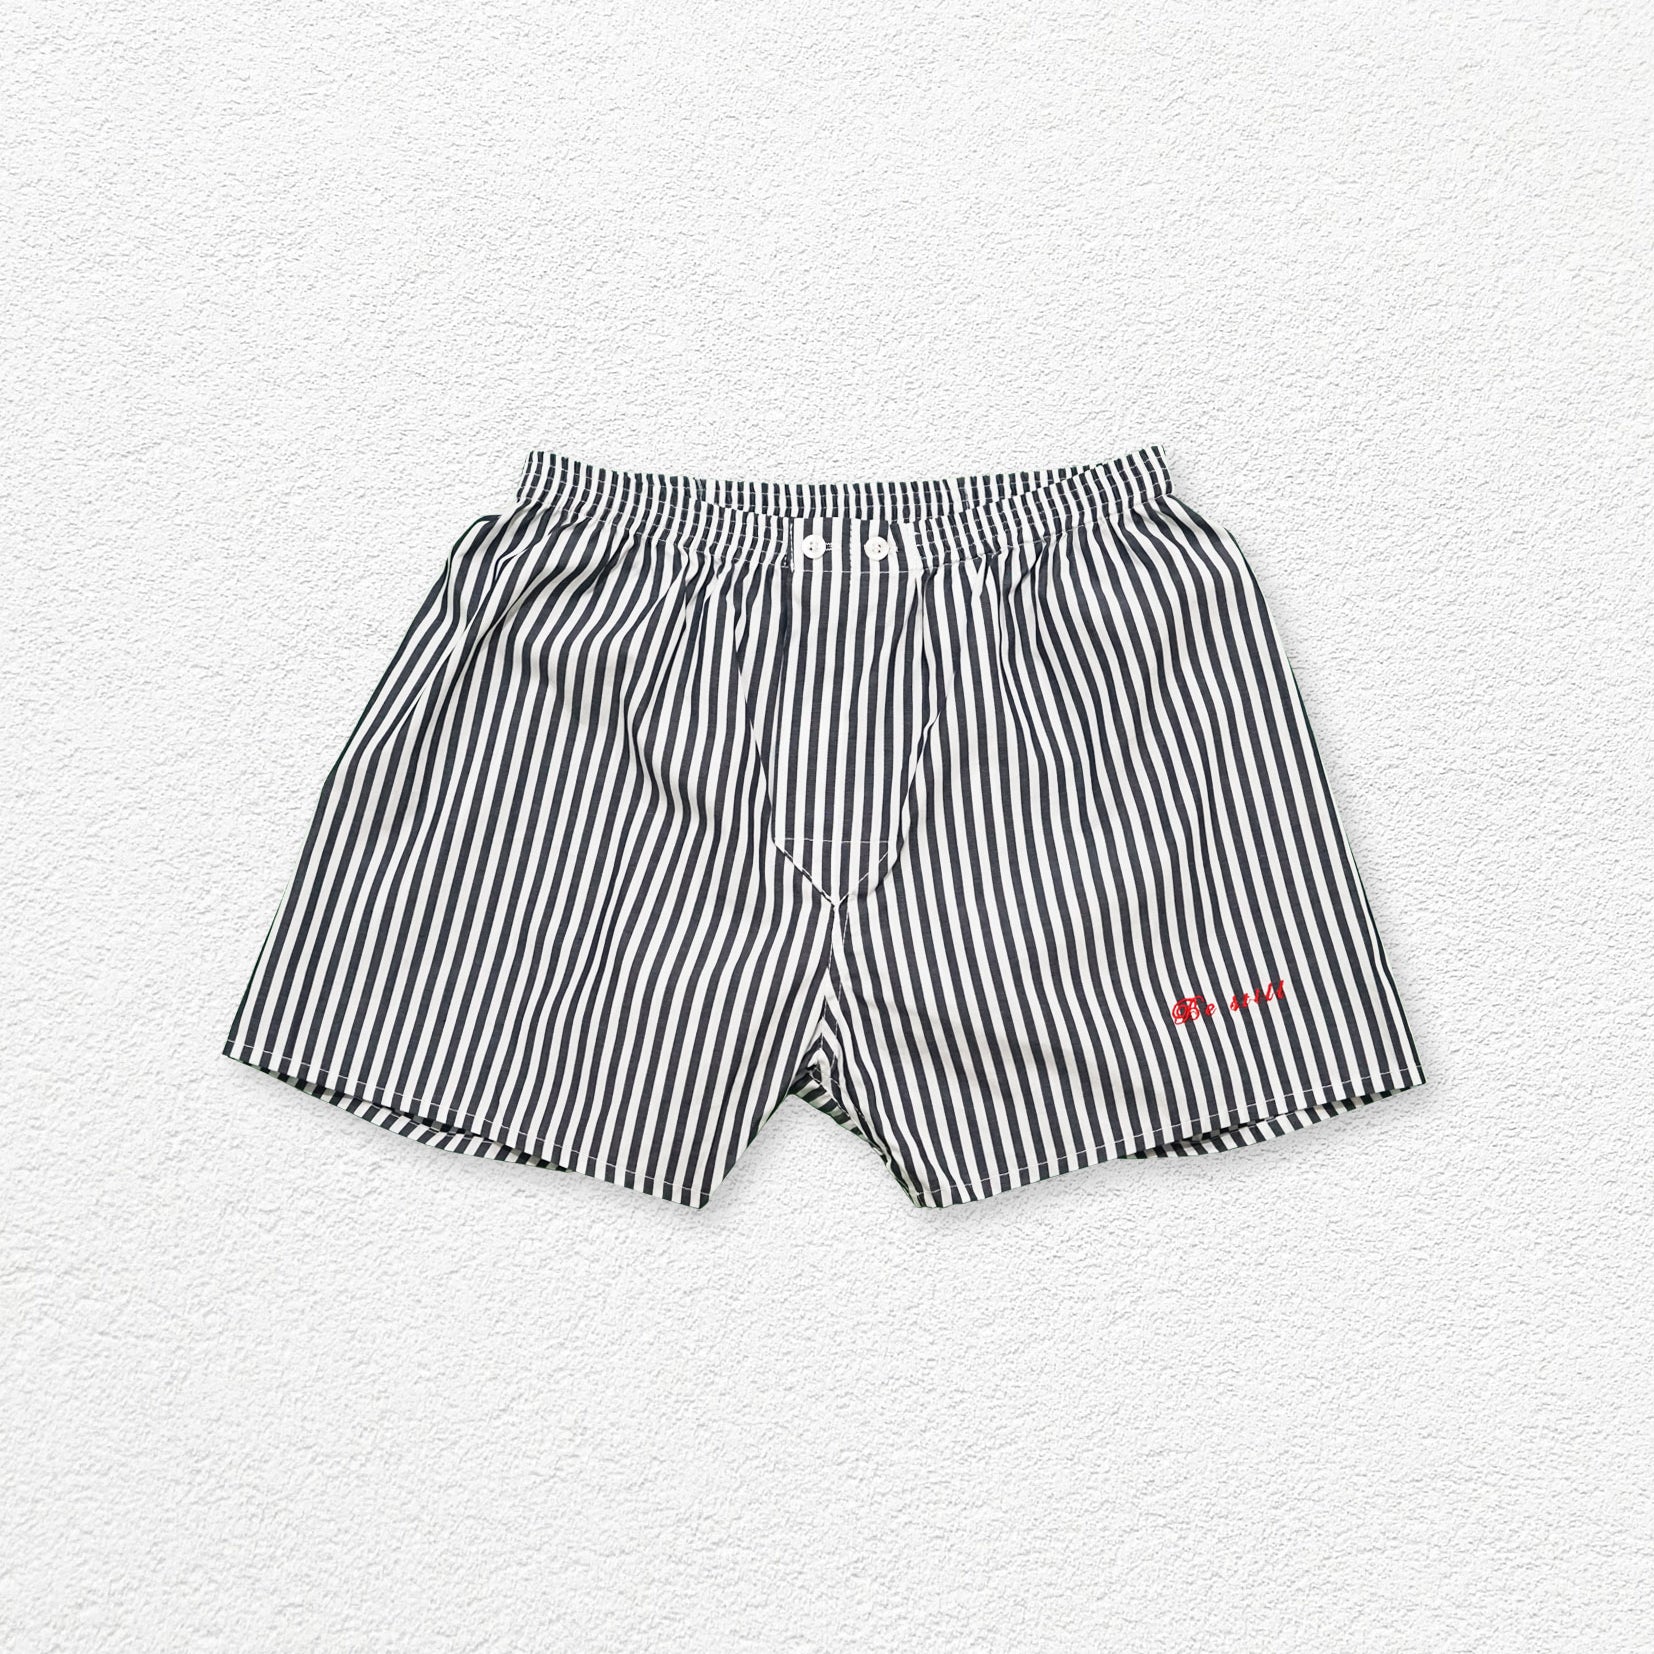 Unisex striped boxer shorts underwear - black